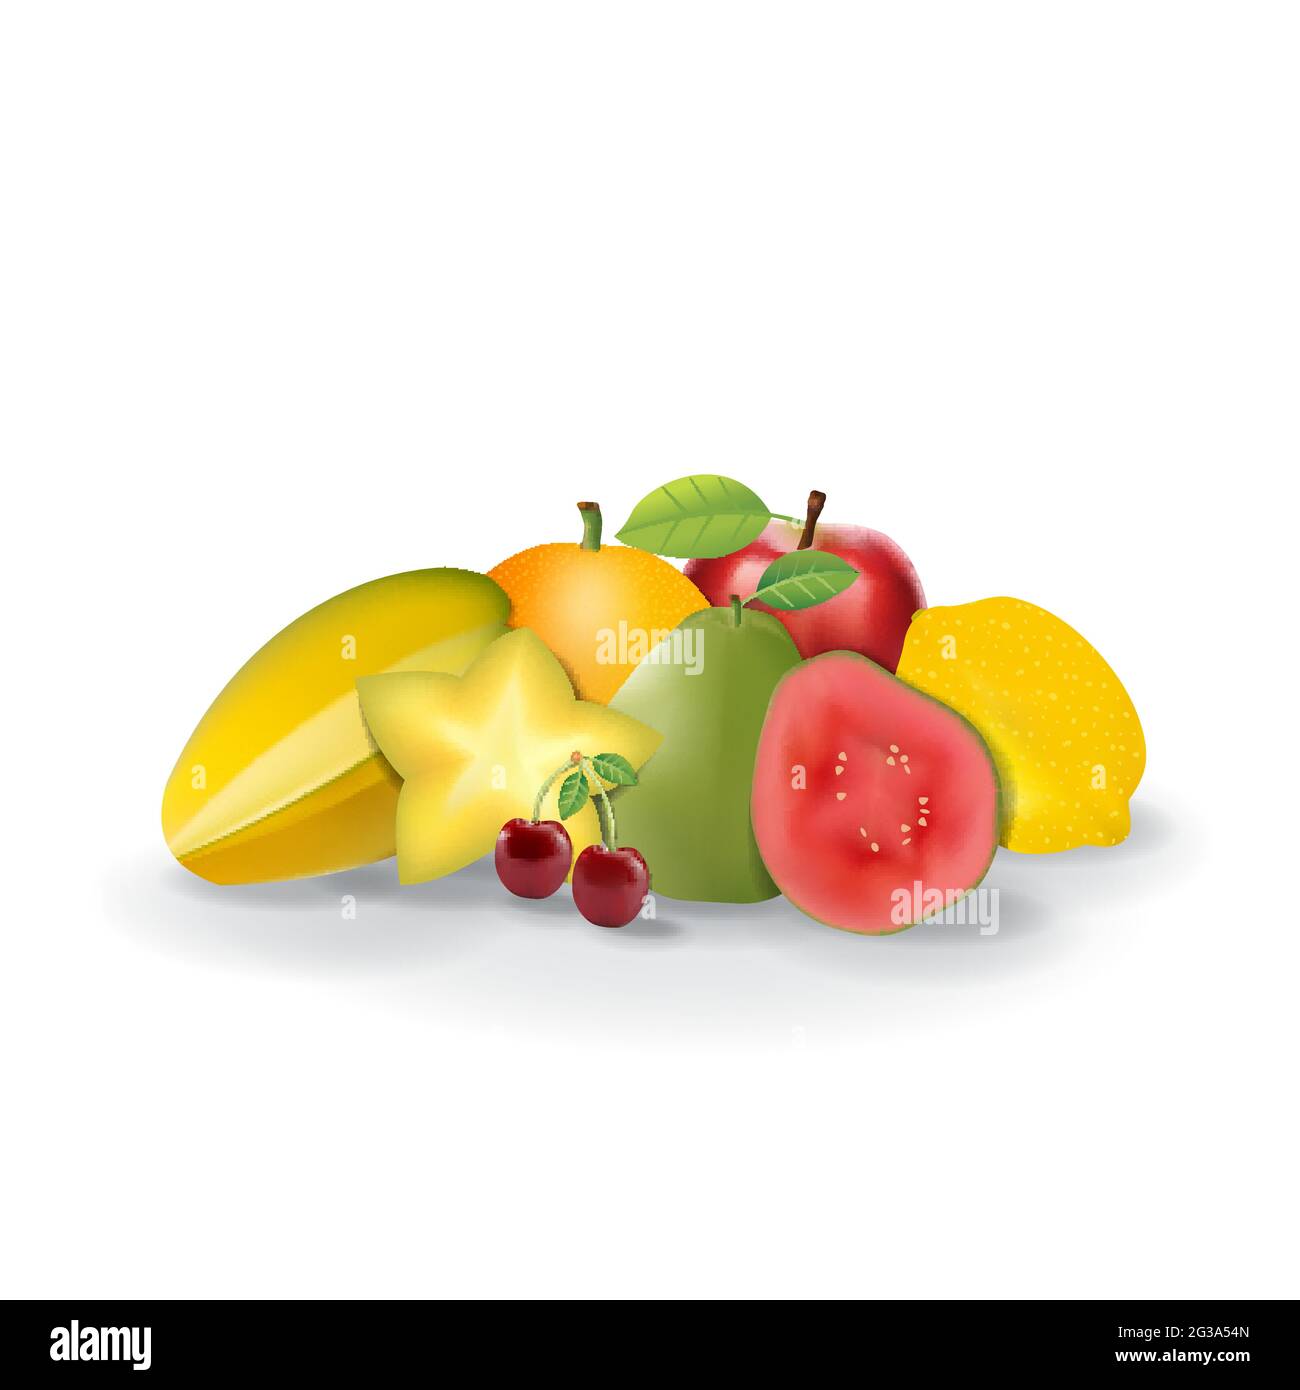 Frutta fresca naturale realistica su White Summer Isolated Vector Illustration 02 Illustrazione Vettoriale